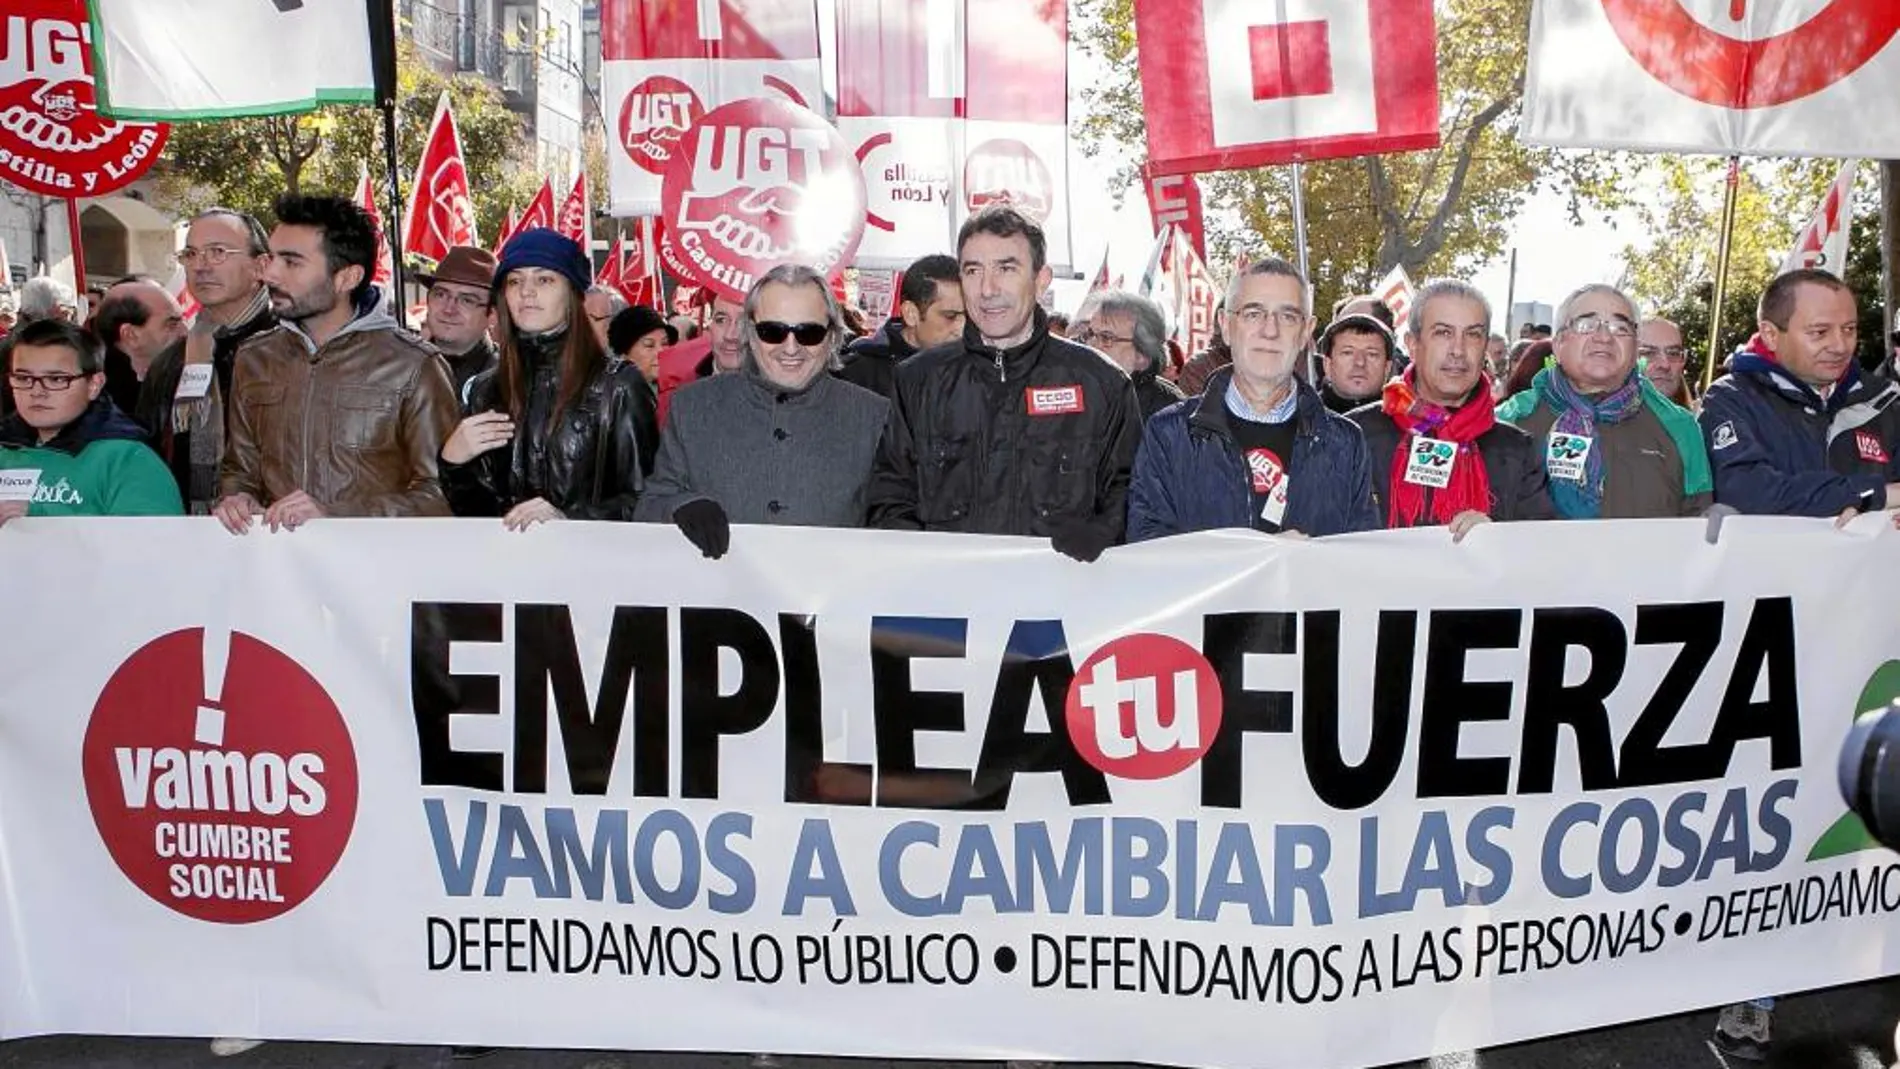 Los líderes sindicales, Ángel Hernández (CCOO), Agustín Prieto (UGT) y Marcelo García (FTSP-USO) encabezaron la protesta en Valladolid